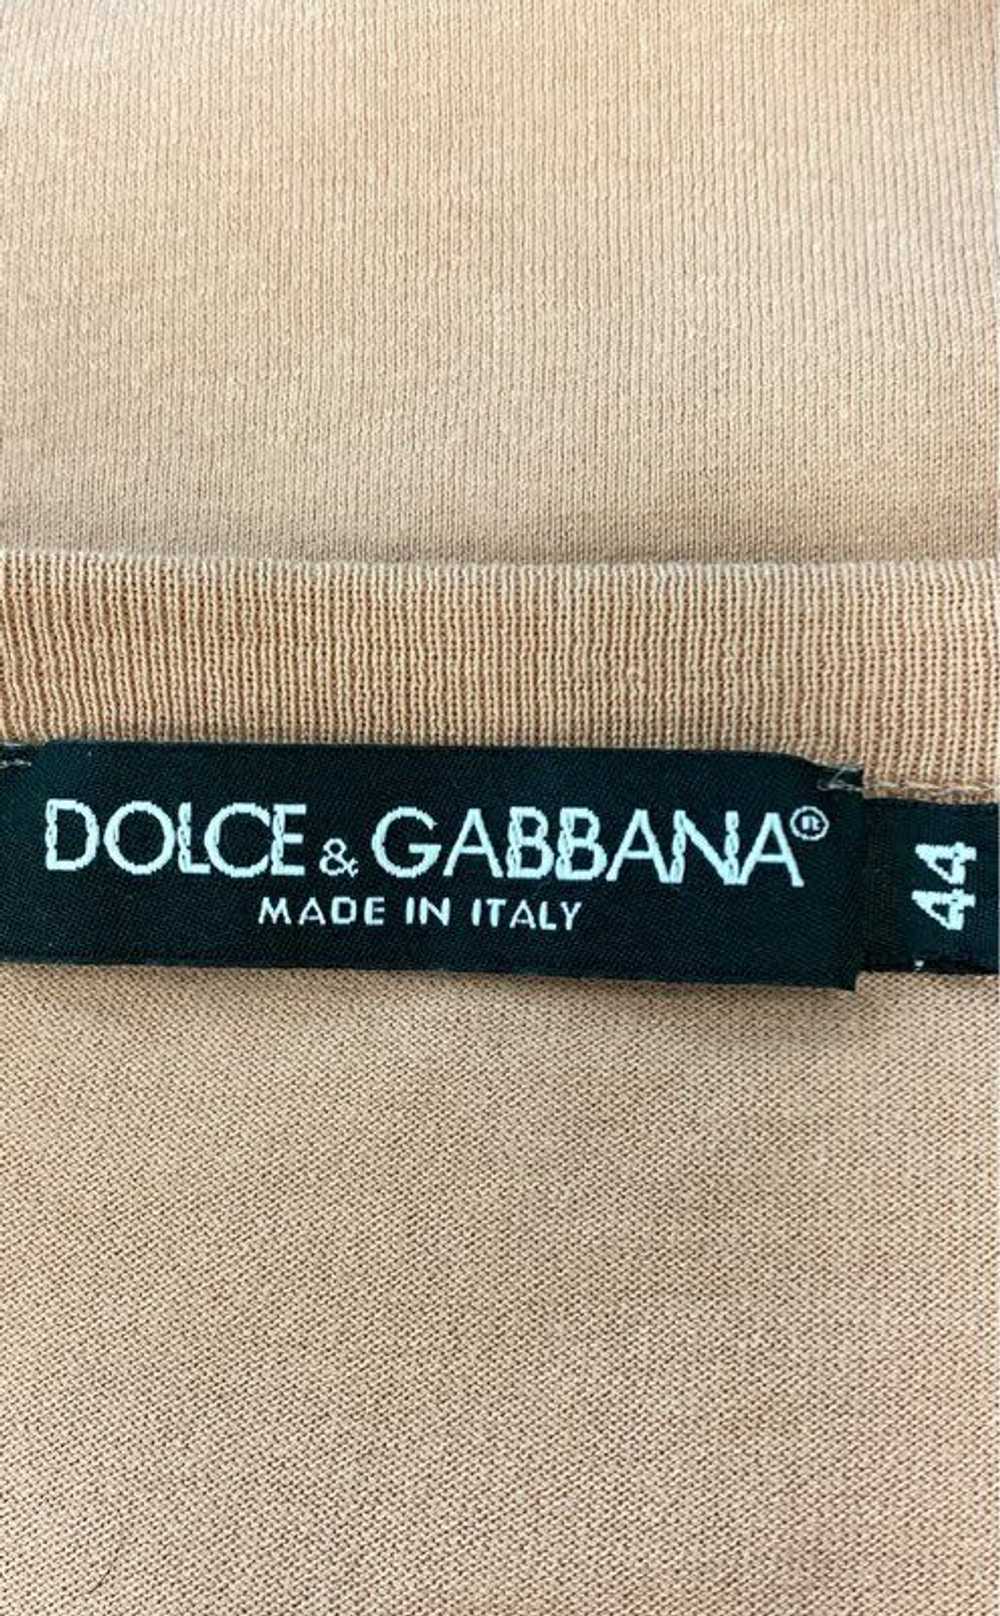 Dolce&Gabbana Dolce & Gabbana Peach Shirt - Size … - image 3